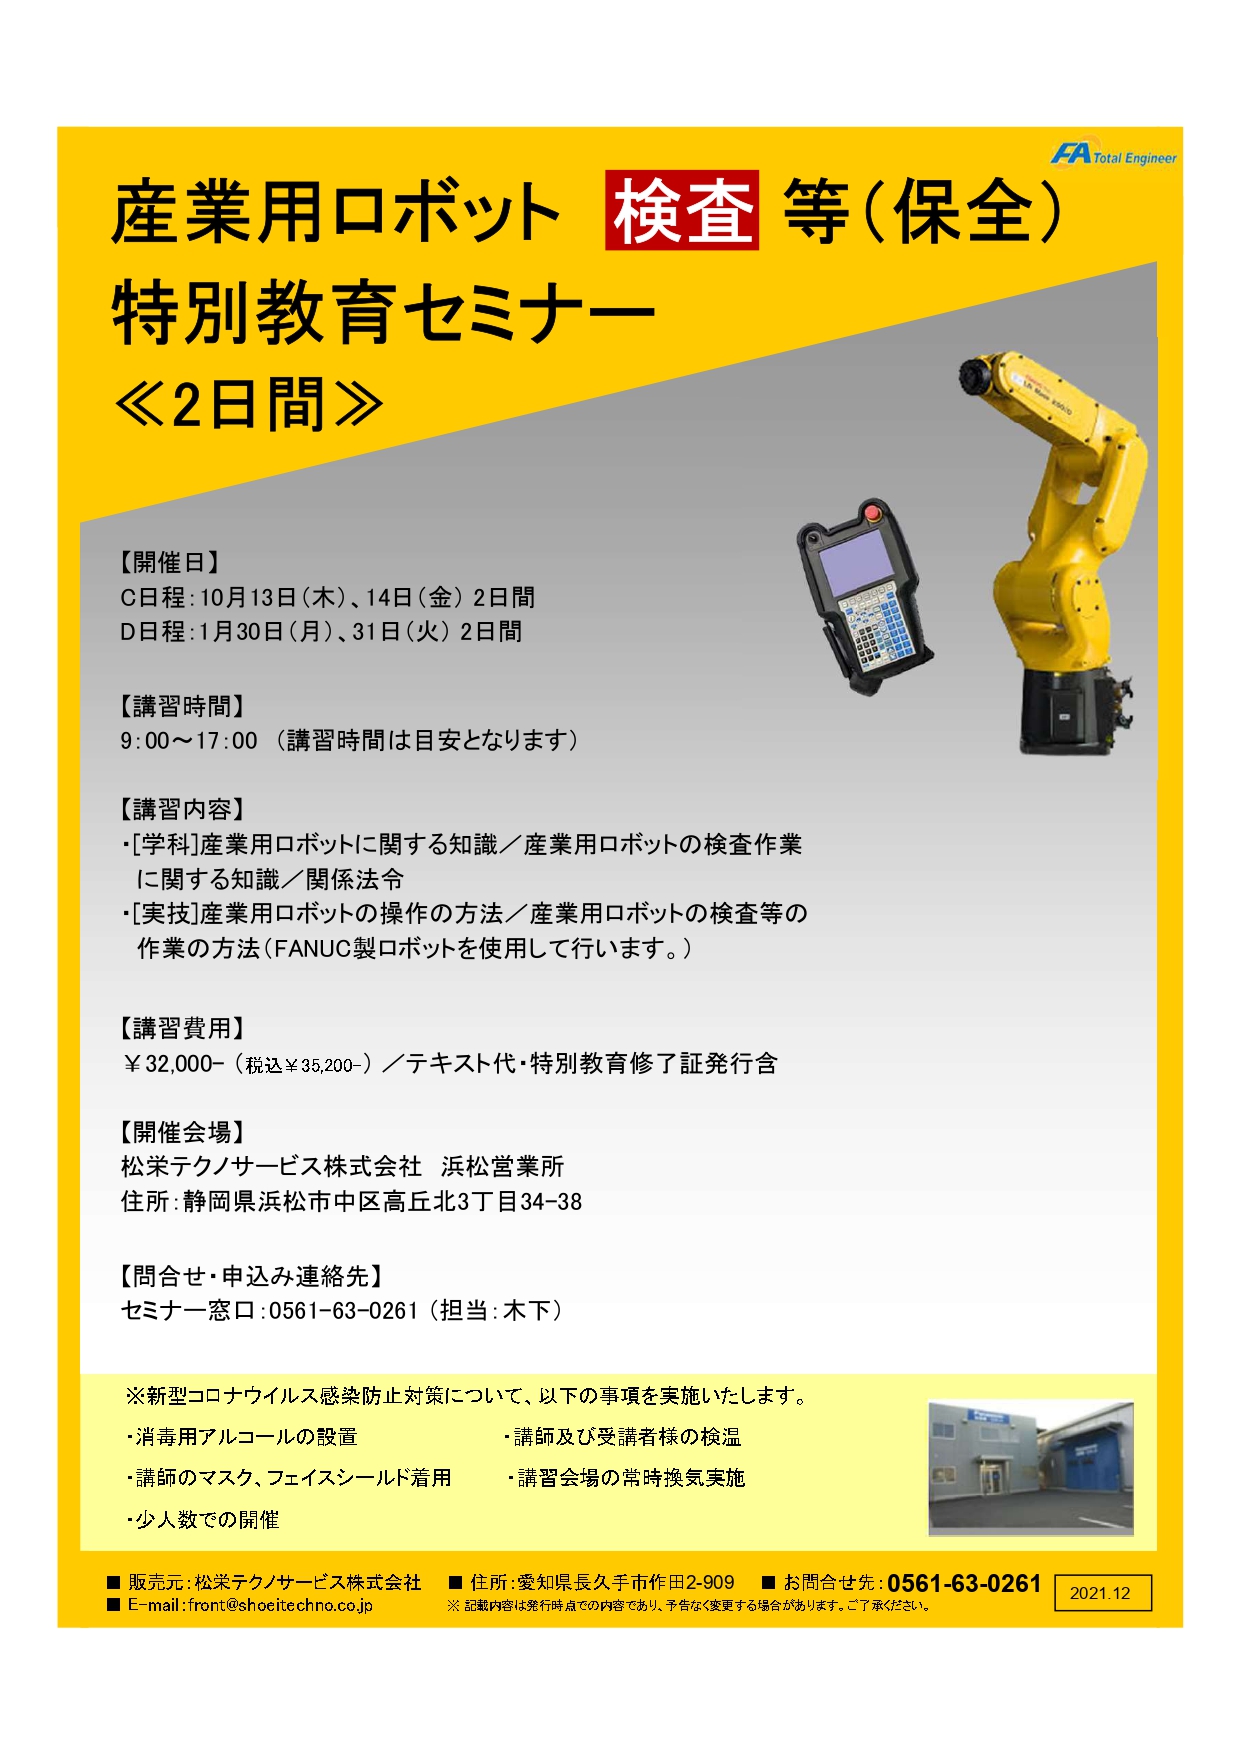 【静岡県開催】産業用ロボット特別教育検査等（保全）セミナー開催のお知らせ